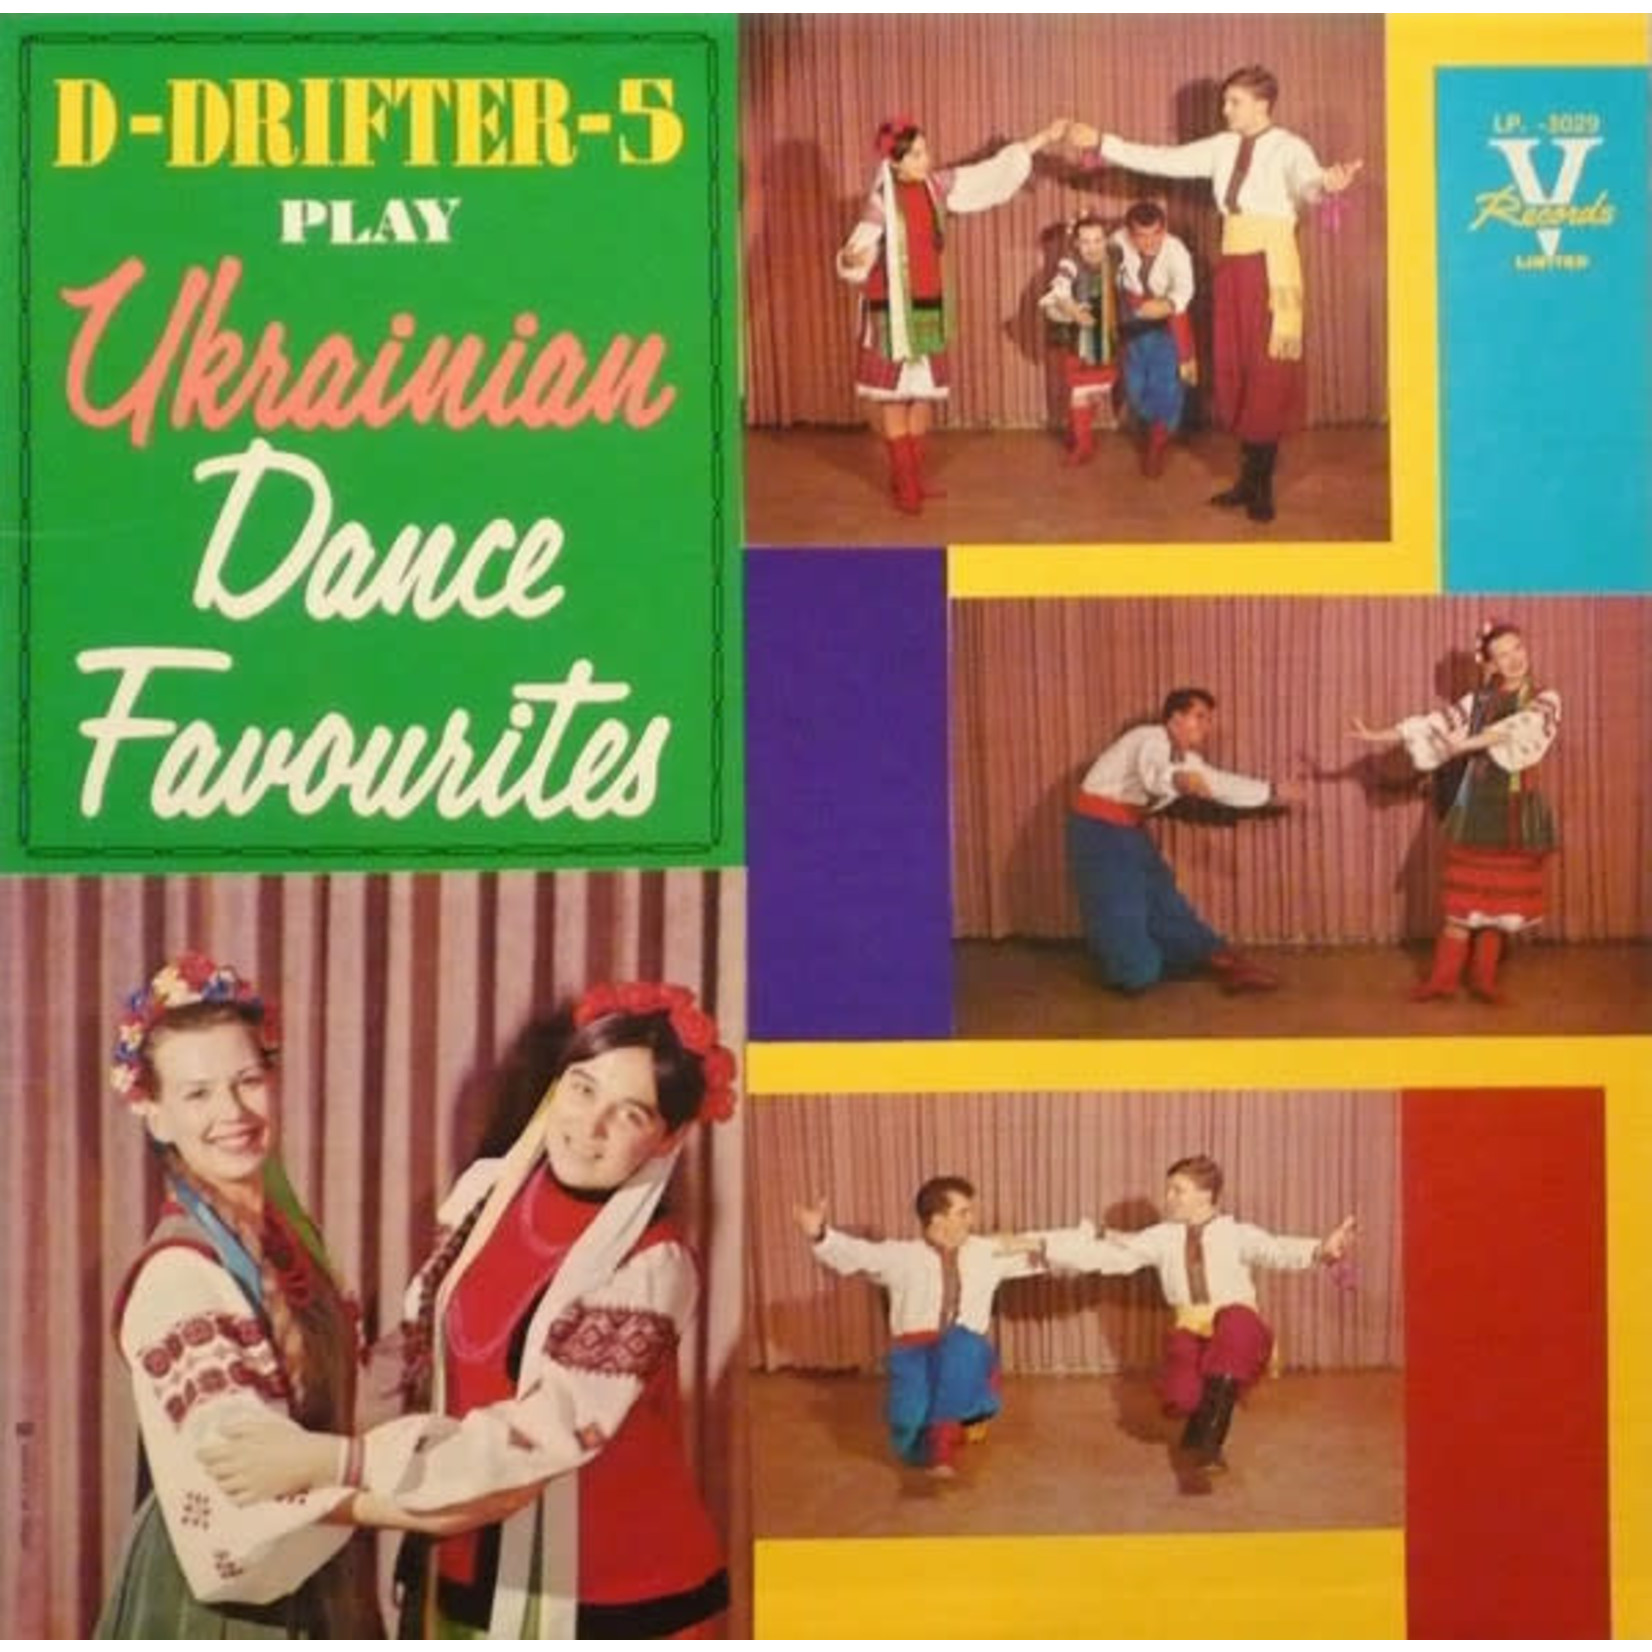 D-Drifters-5 D-Drifters-5 – Play Ukrainian Dance Favourites (VG)